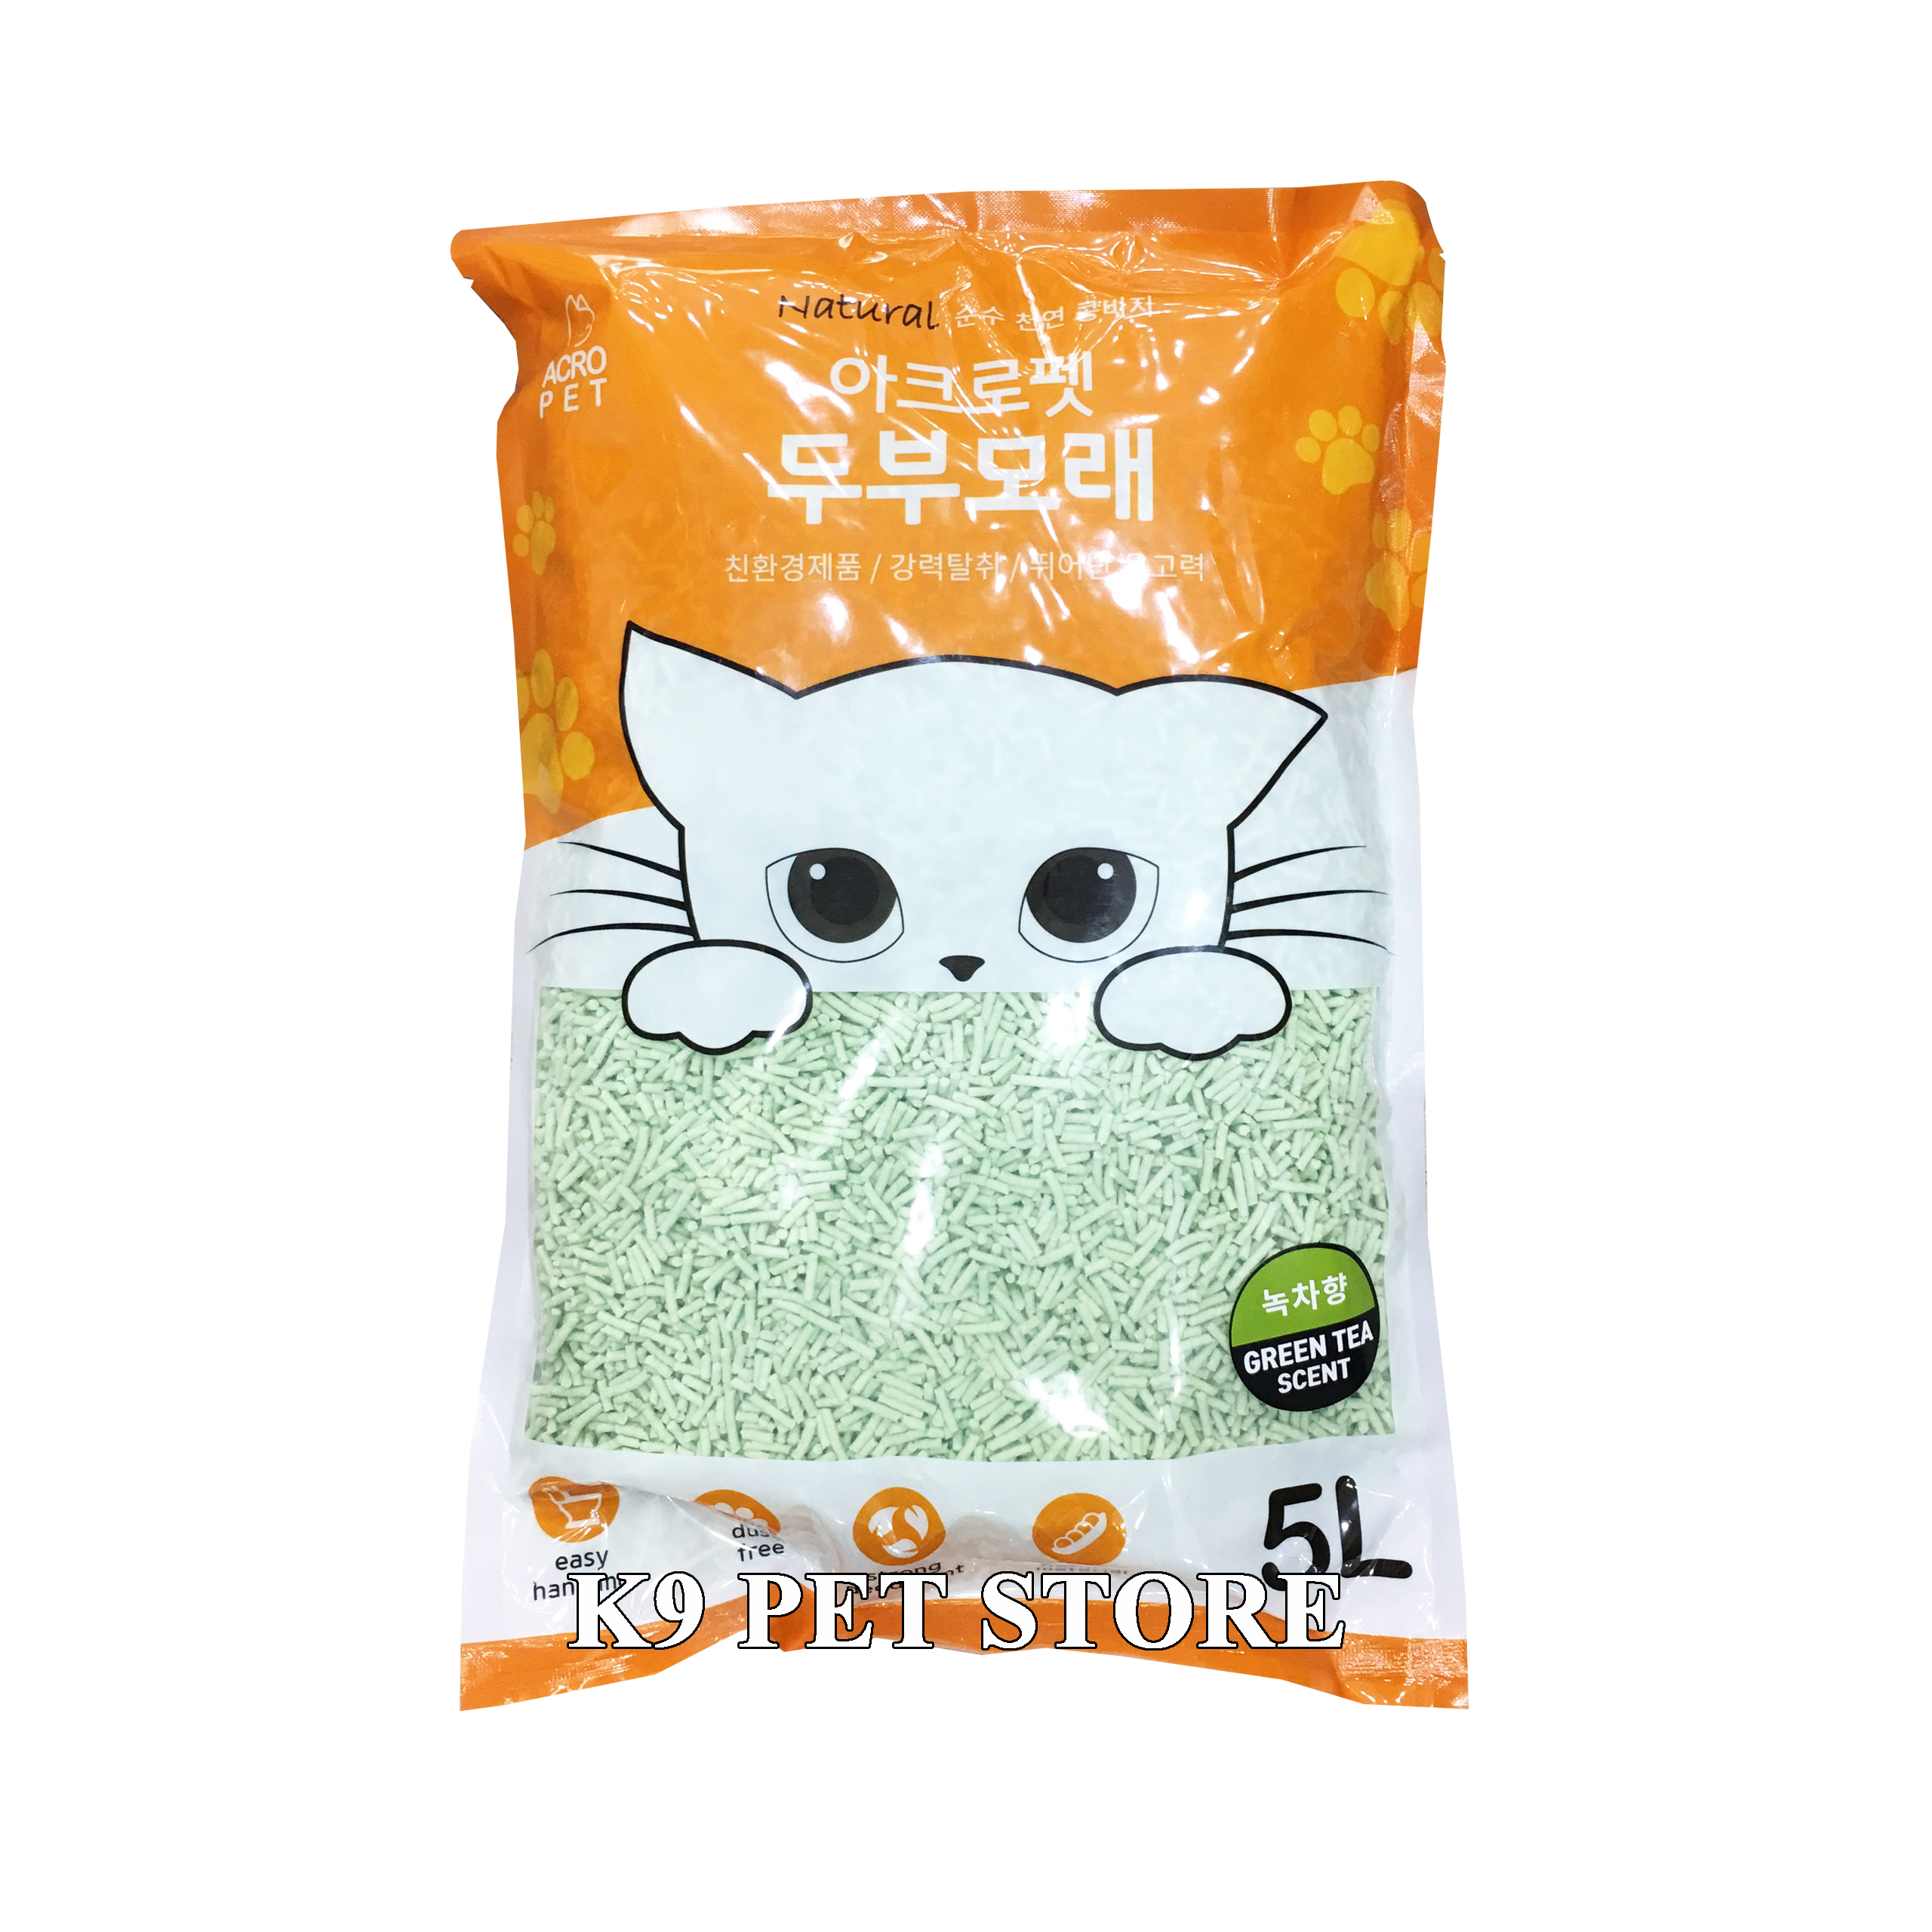 Cát vệ sinh tàu hũ Acro Pet cho mèo hương Green Tea gói 5l